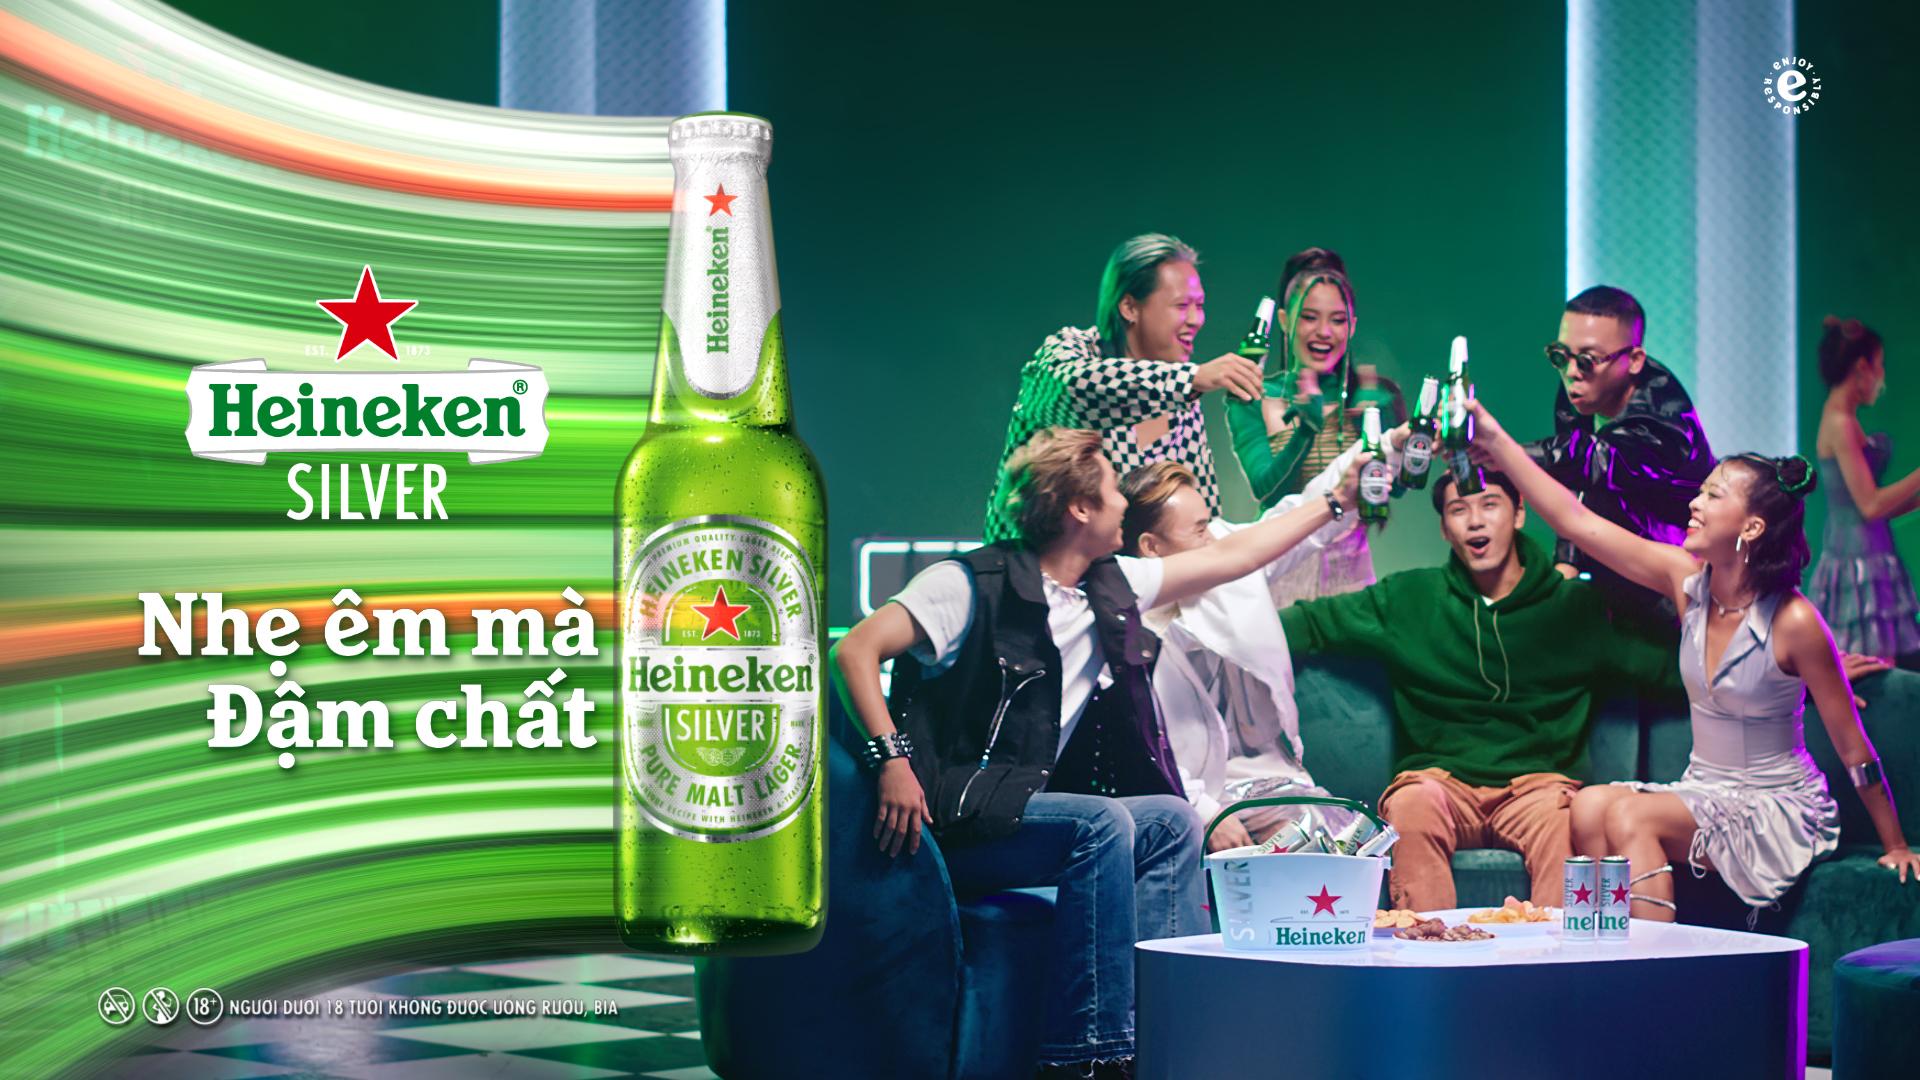 Hành trình người trẻ mở lối cuộc vui thời thượng cùng Heineken Silver - Ảnh 10.